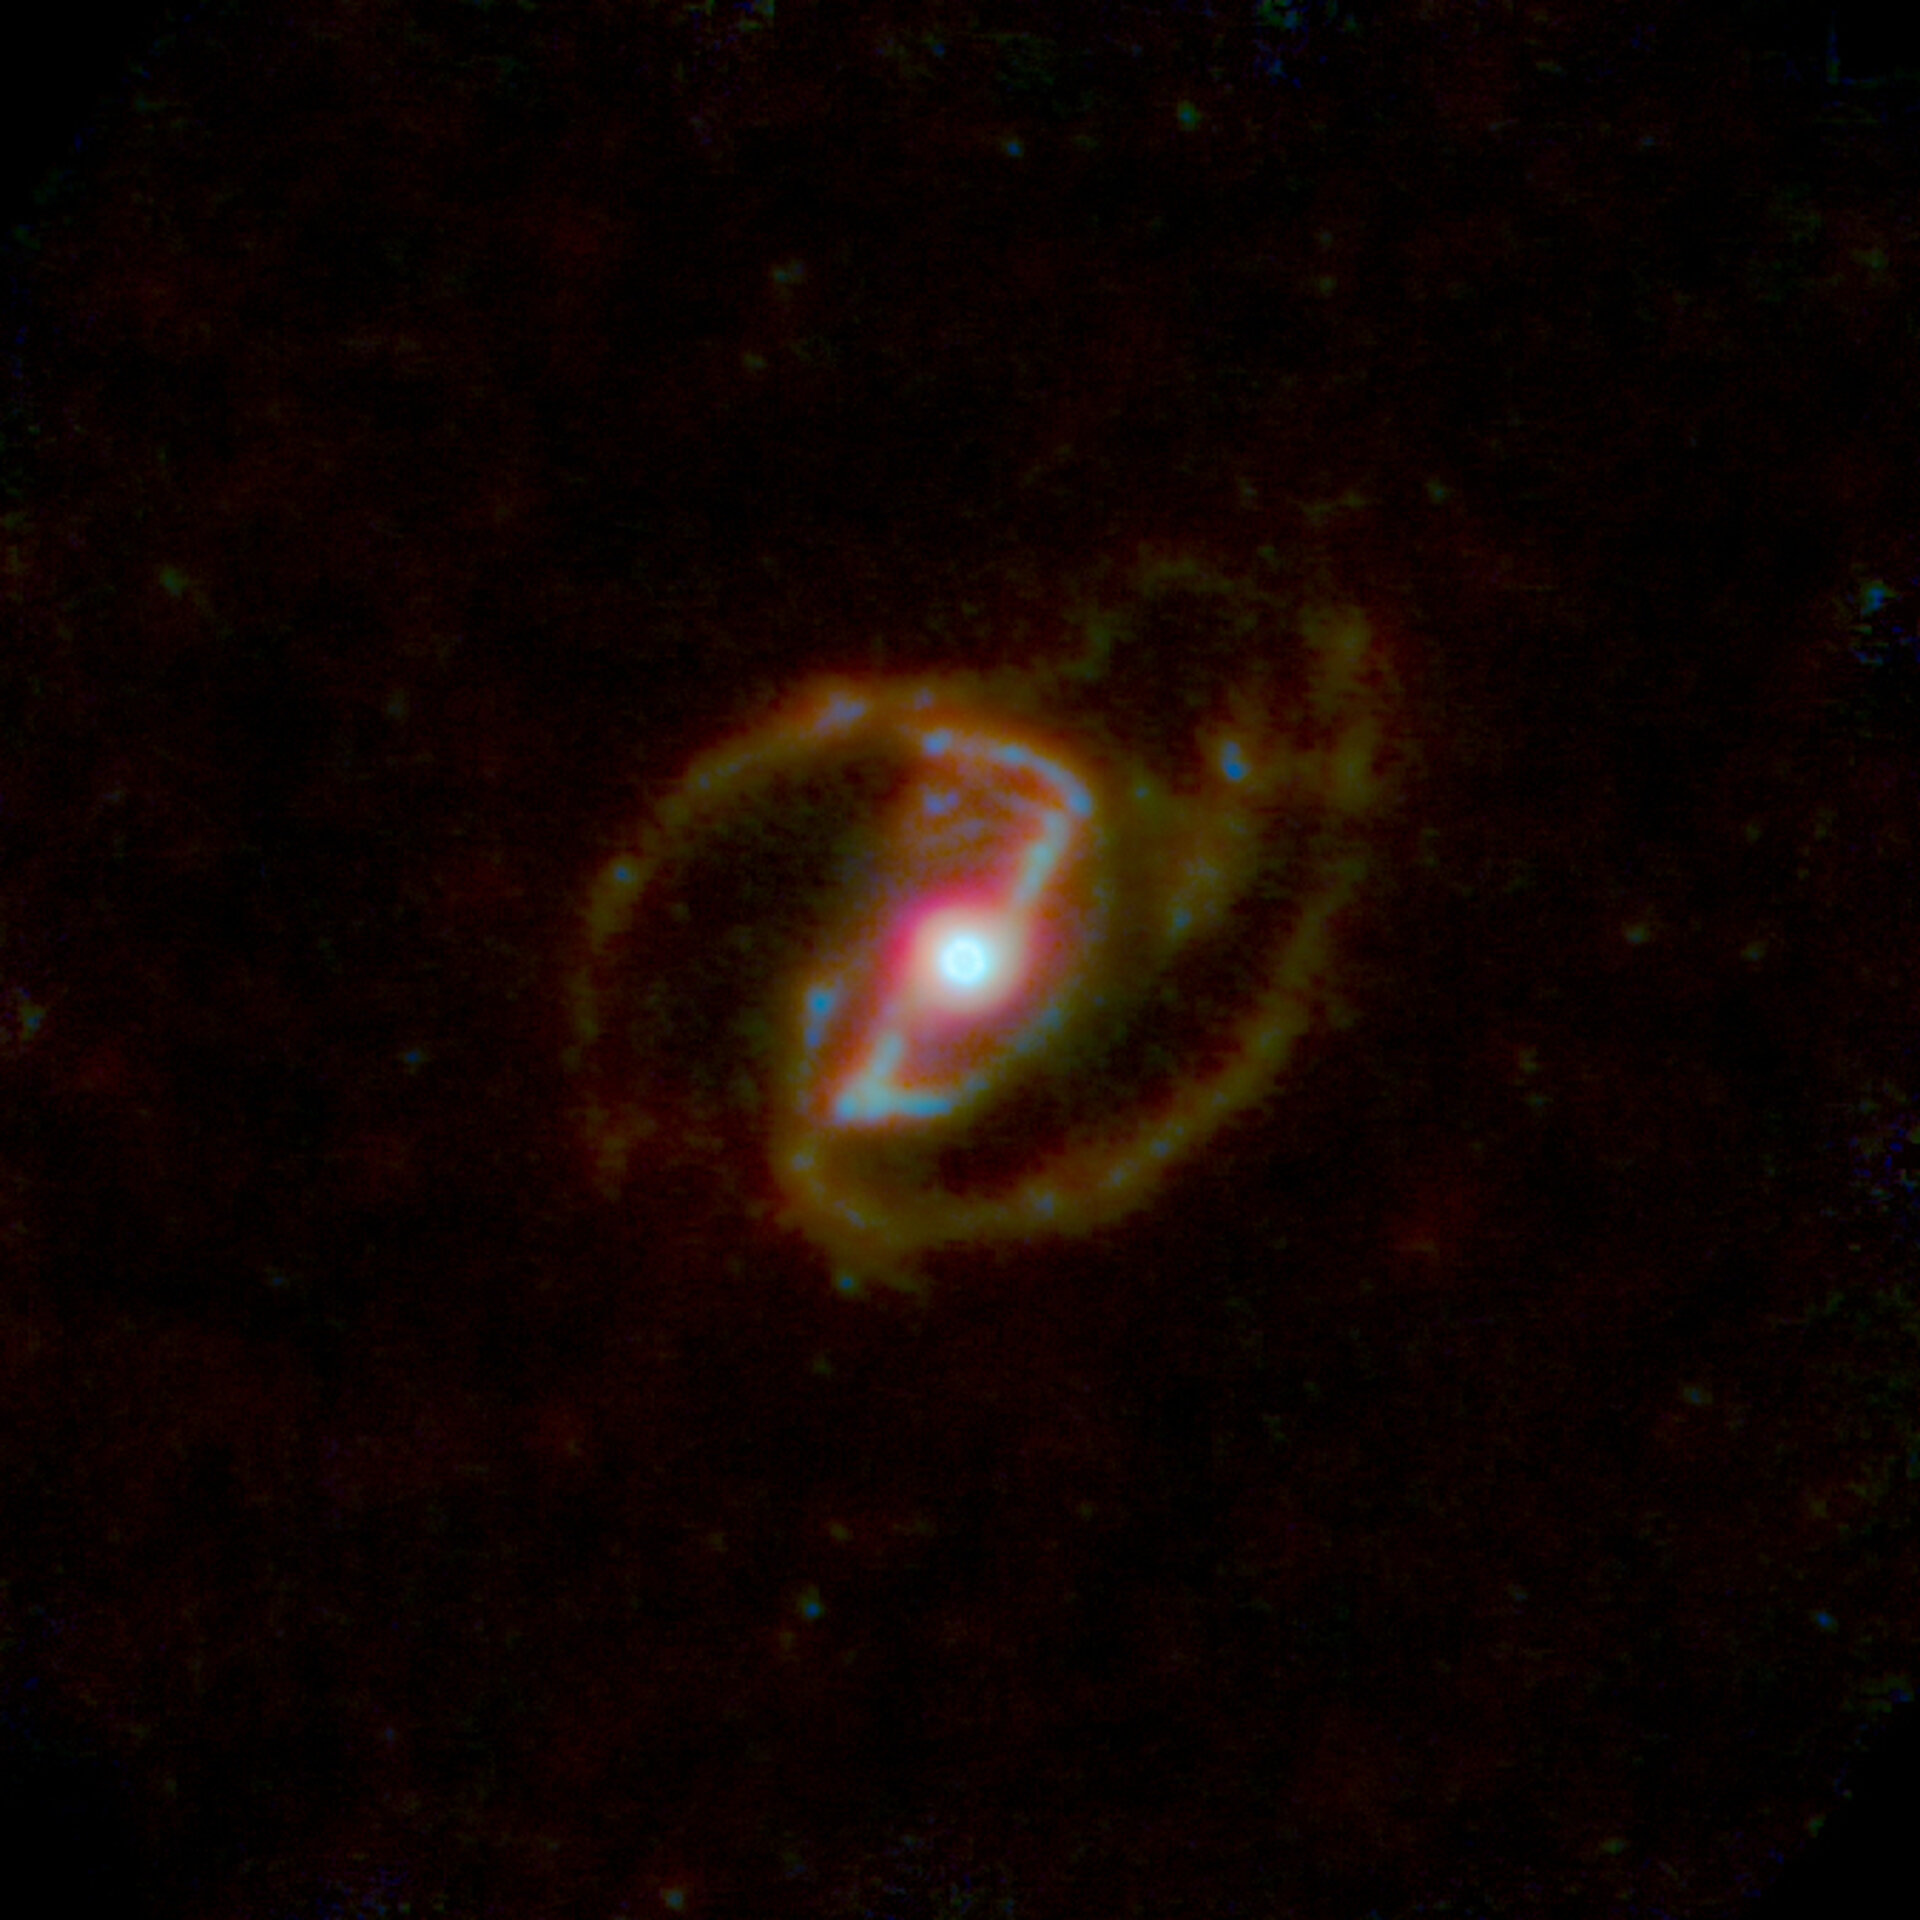 Herschel’s view of NGC 1097